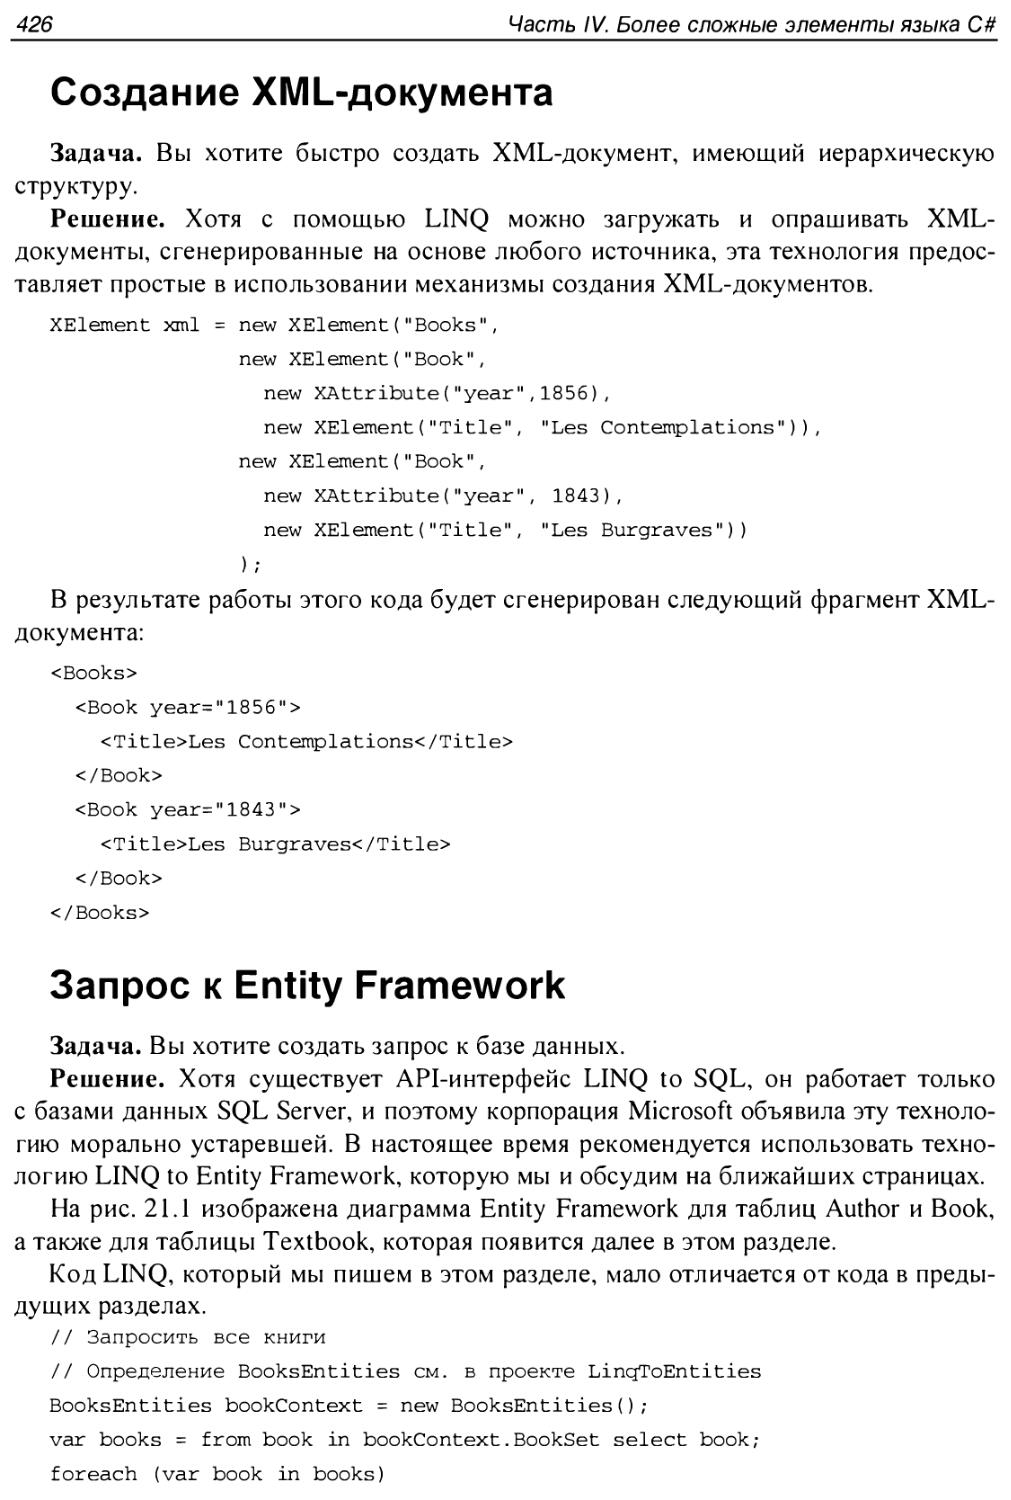 Запрос к Entity Framework